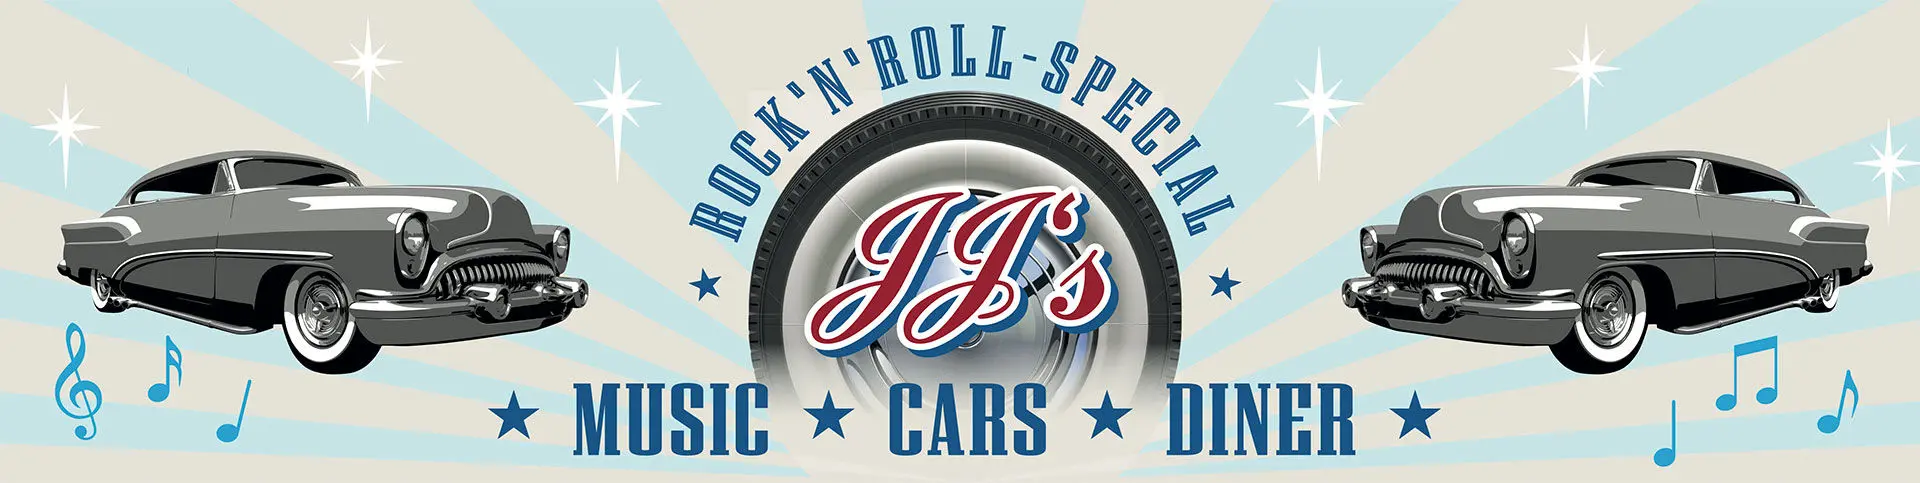 JJ's Rock'Roll-Special